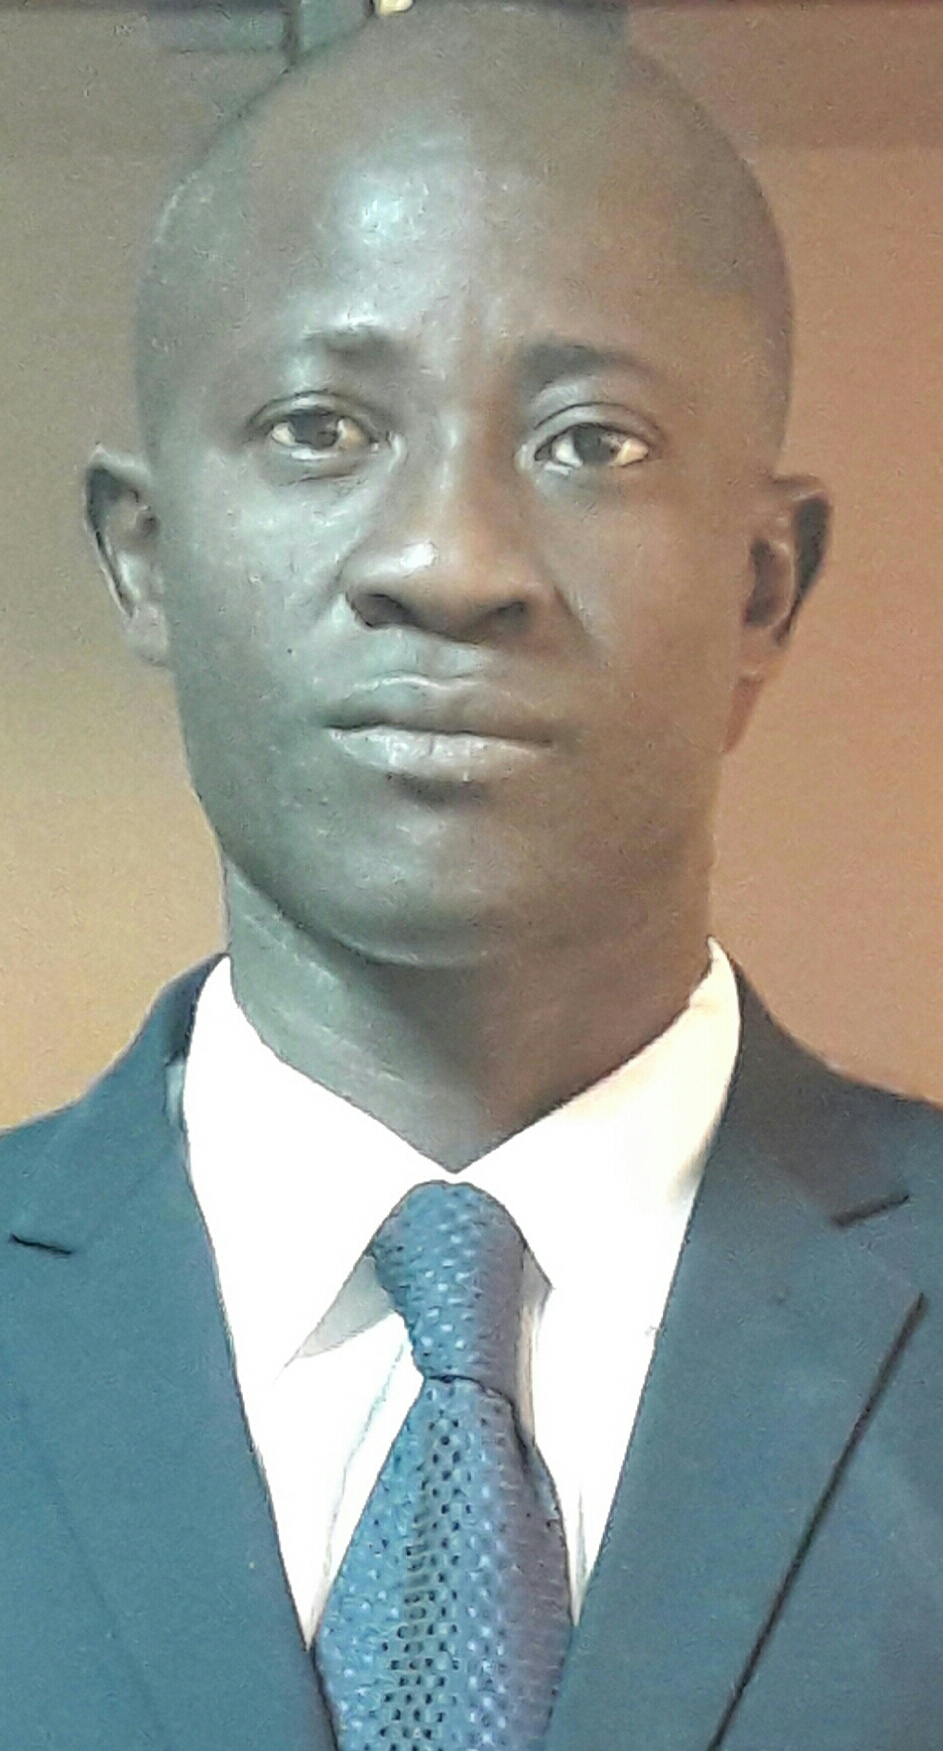 À Ousmane Sonko : tuer les anciens présidents du Sénégal, n'est que pur sacrilège. Quel délire paranoiaque !